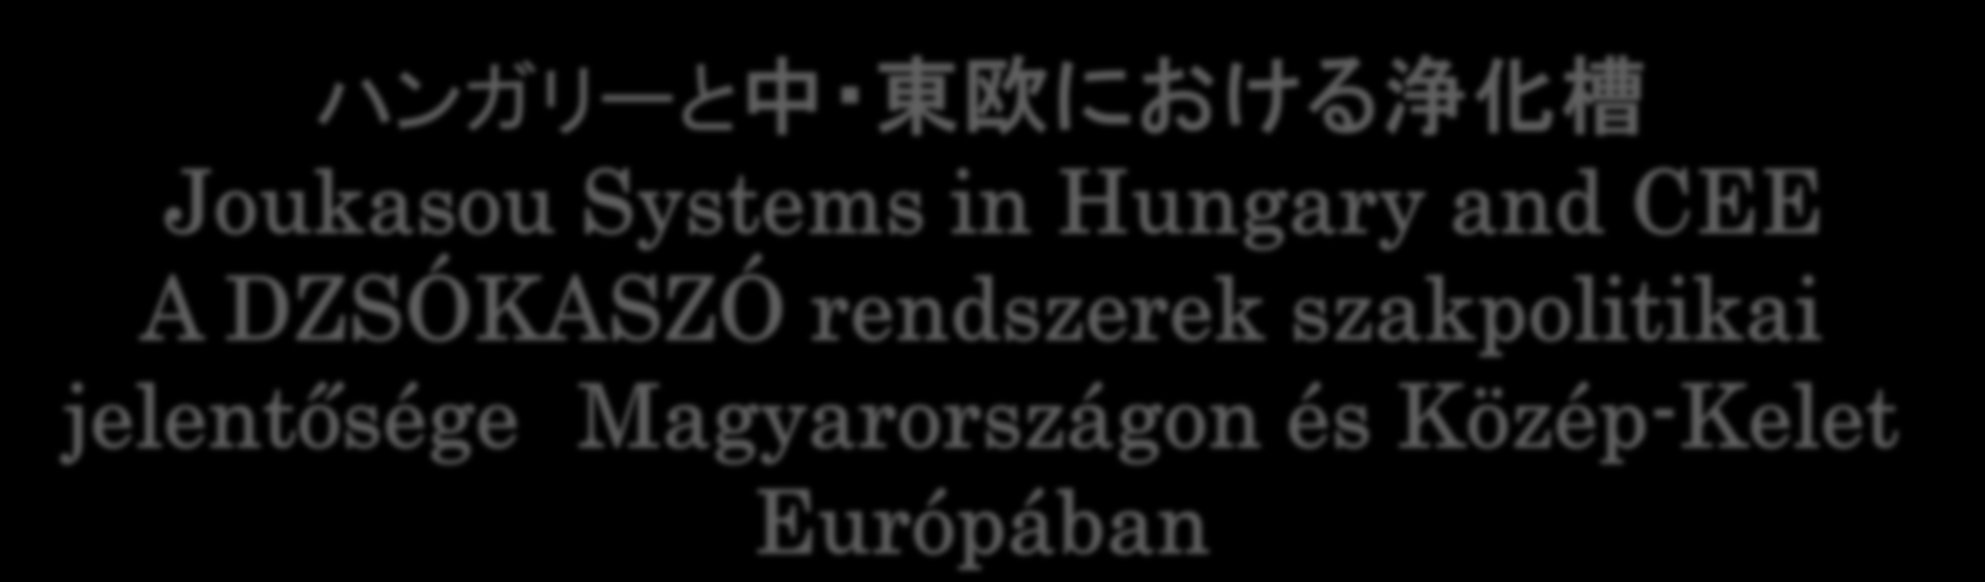 ハンガリーと中 東欧における浄化槽 Joukasou Systems in Hungary and CEE A DZSÓKASZÓ rendszerek szakpolitikai jelentősége Magyarországon és Közép-Kelet Európában Decentralizált